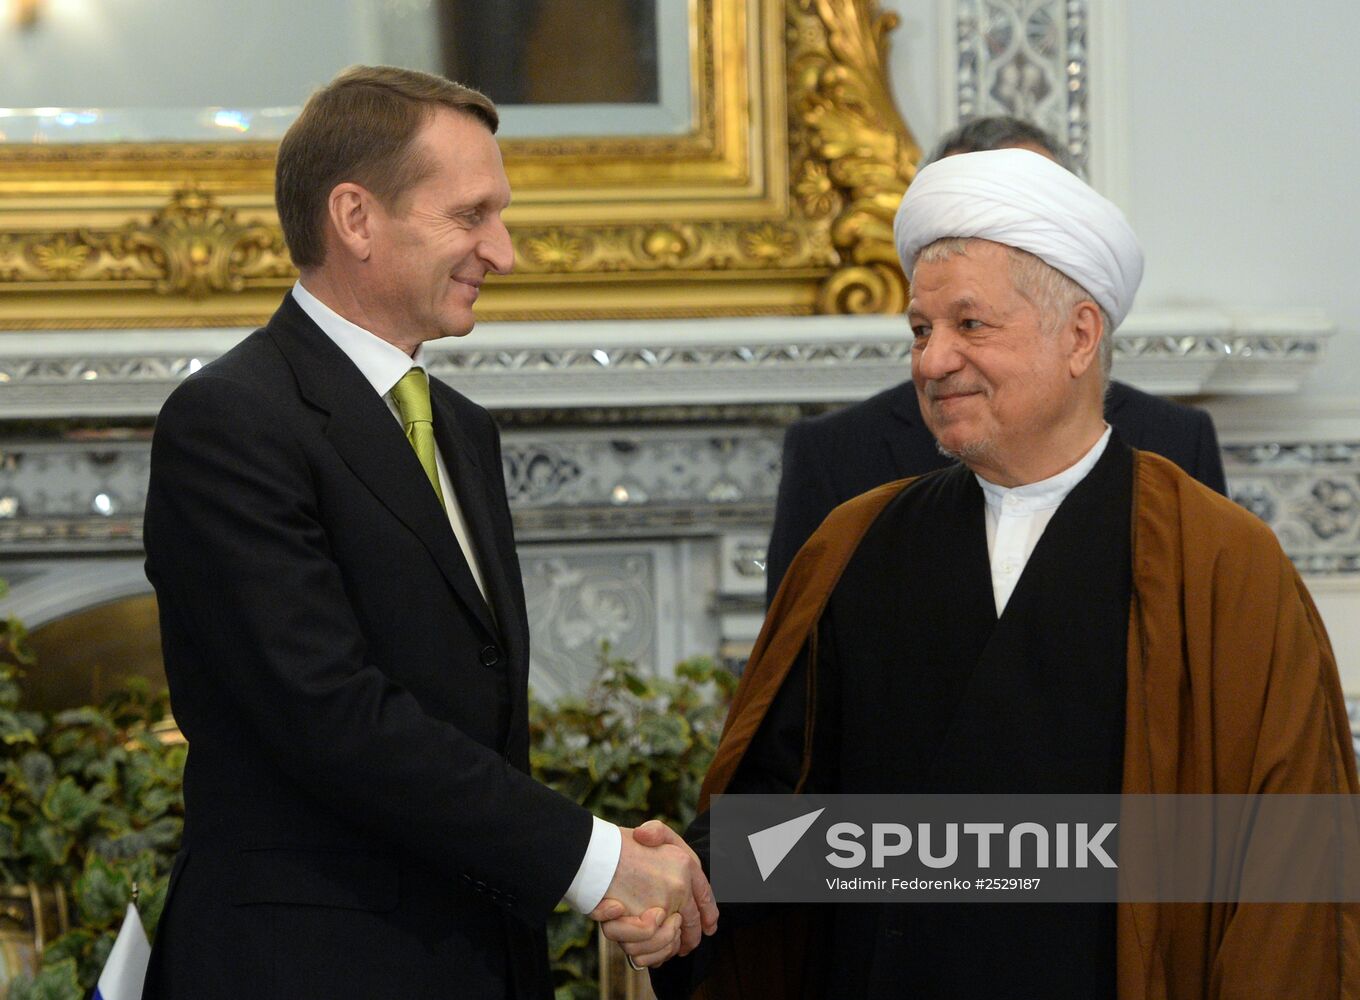 Russian State Duma Chairman Sergei Naryshkin visits Iran